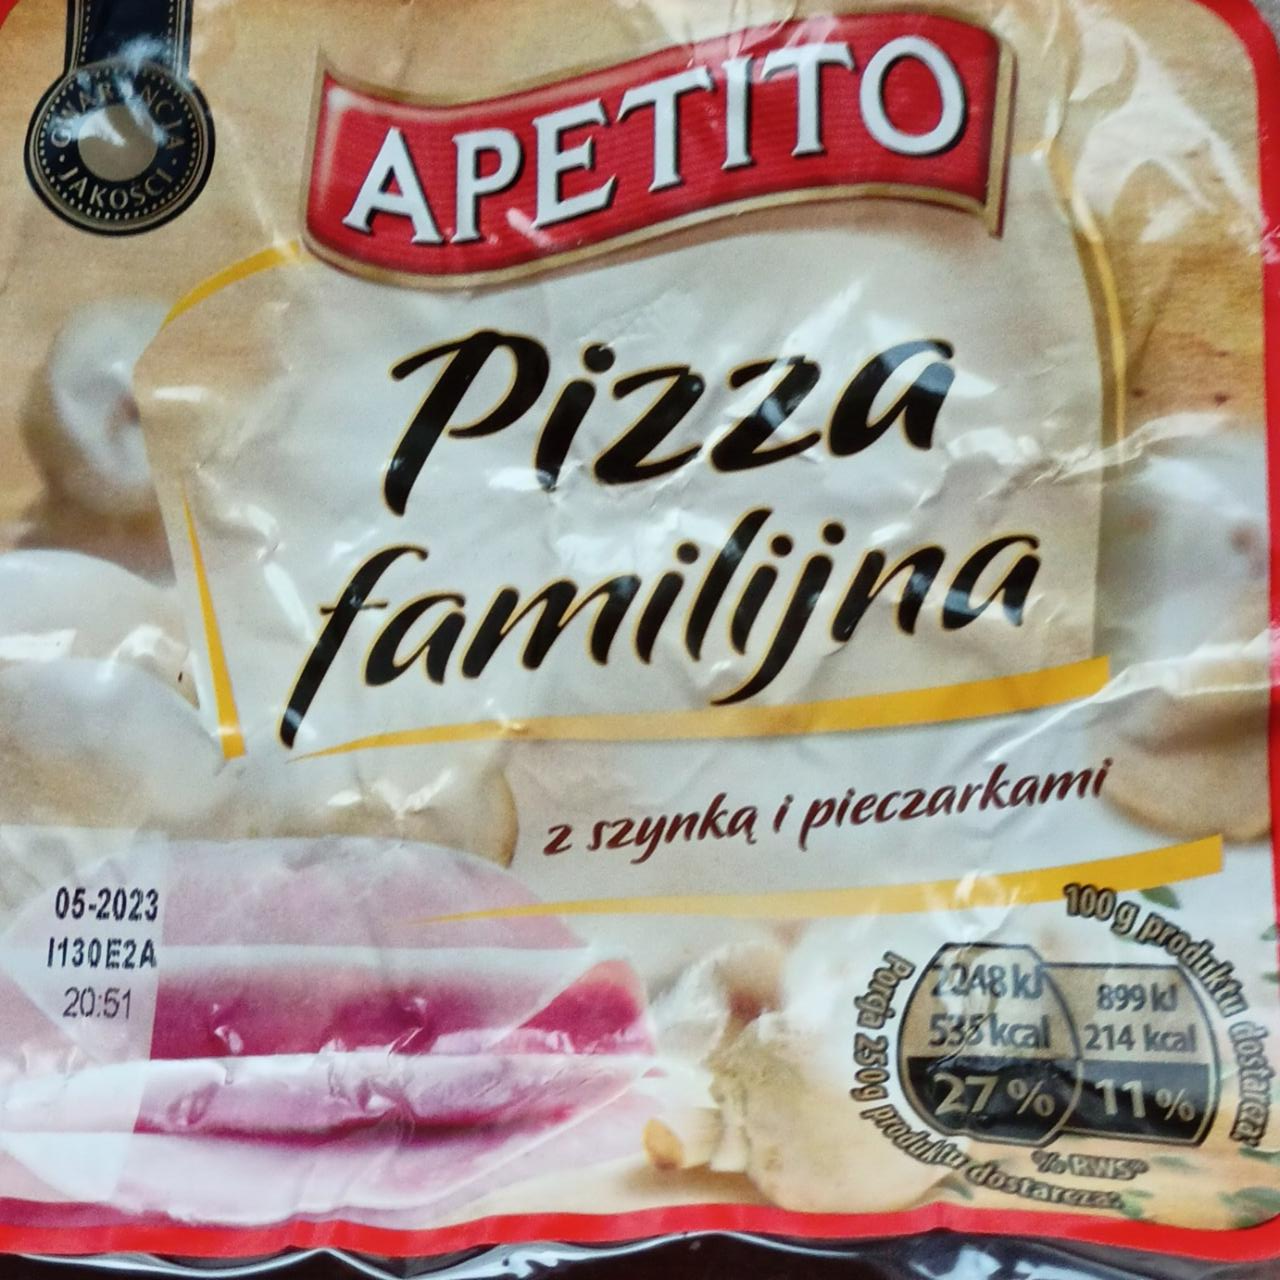 Zdjęcia - Pizza familijna z szynką i pieczarkami Apetito